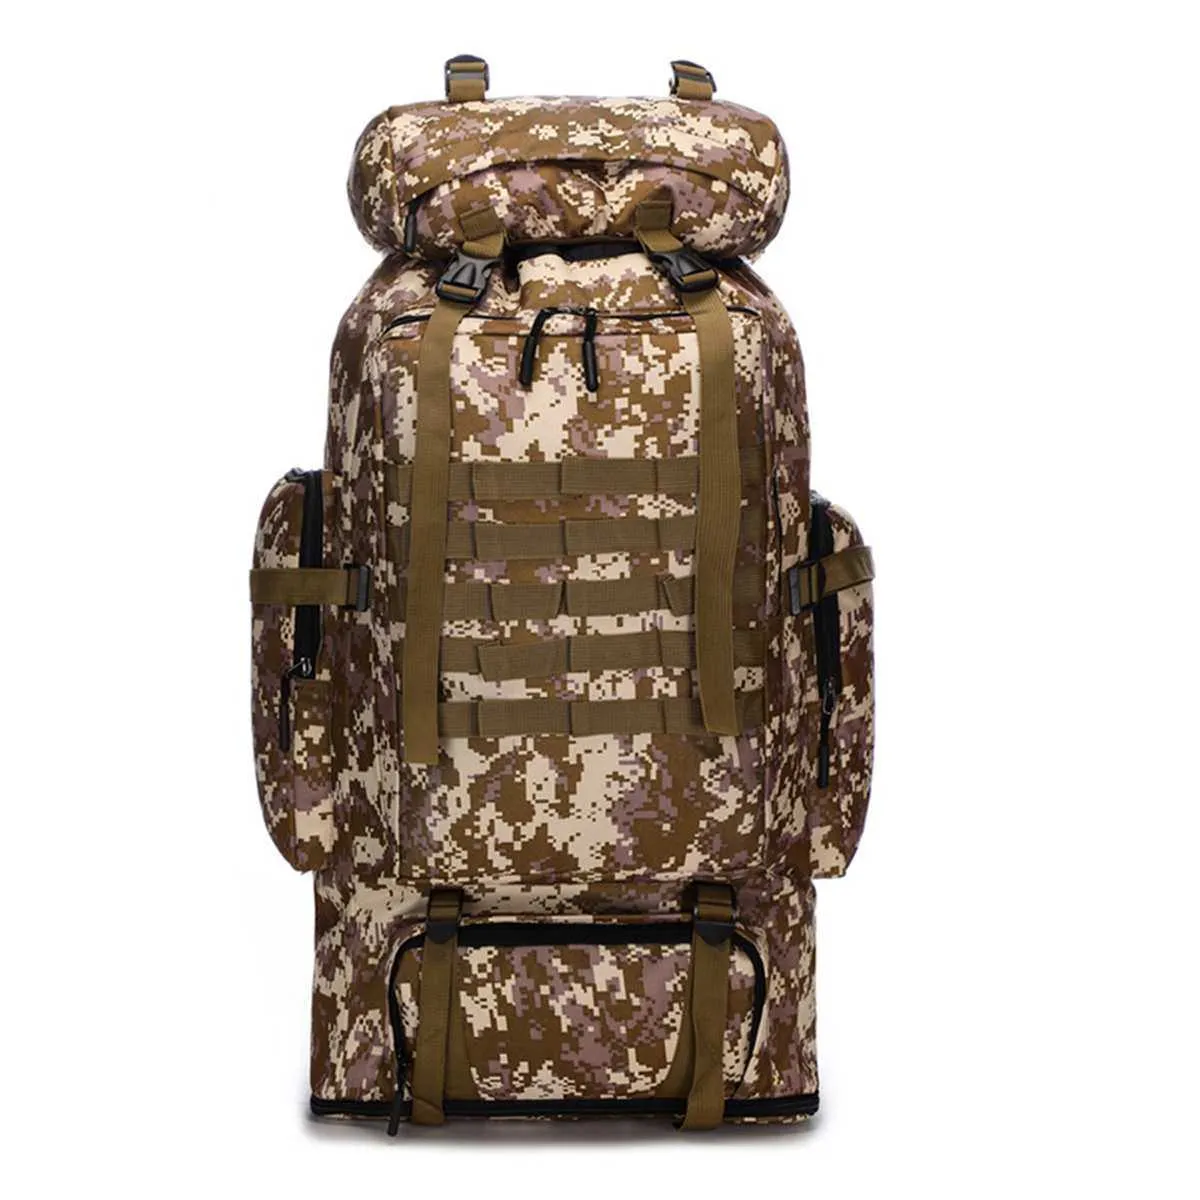 100L grande mochila militar campismo molle camping sacucksack mochila tático homens caminhadas escalada viagem ao ar livre esporte sacos mochilas